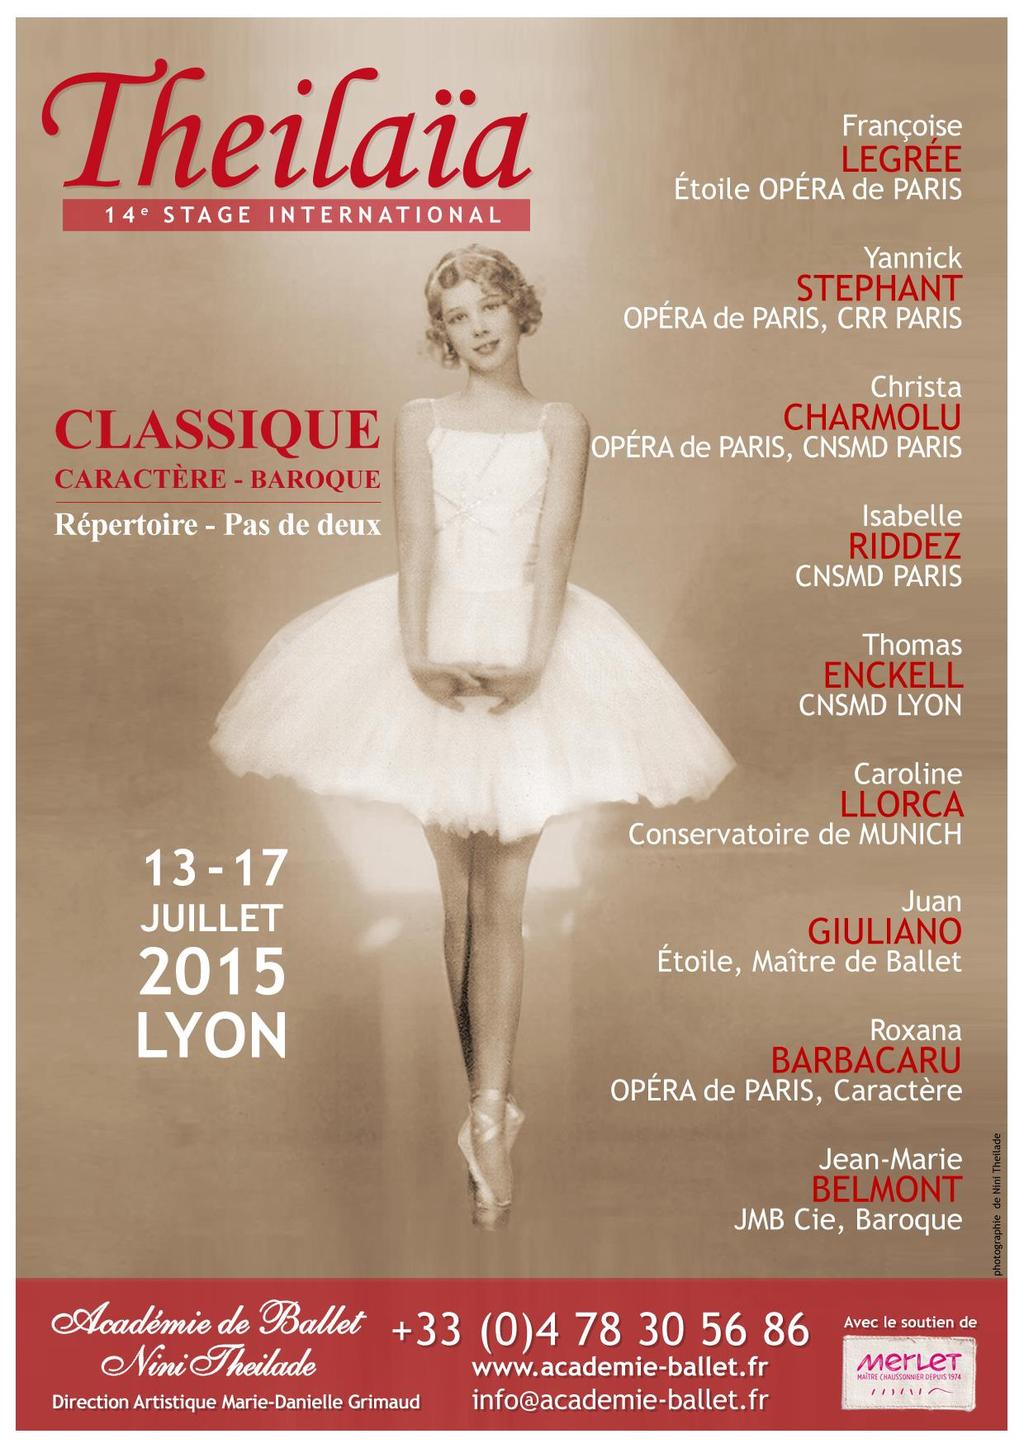 des Feuillants 69001 Lyon - FRANCE www.academie-ballet.